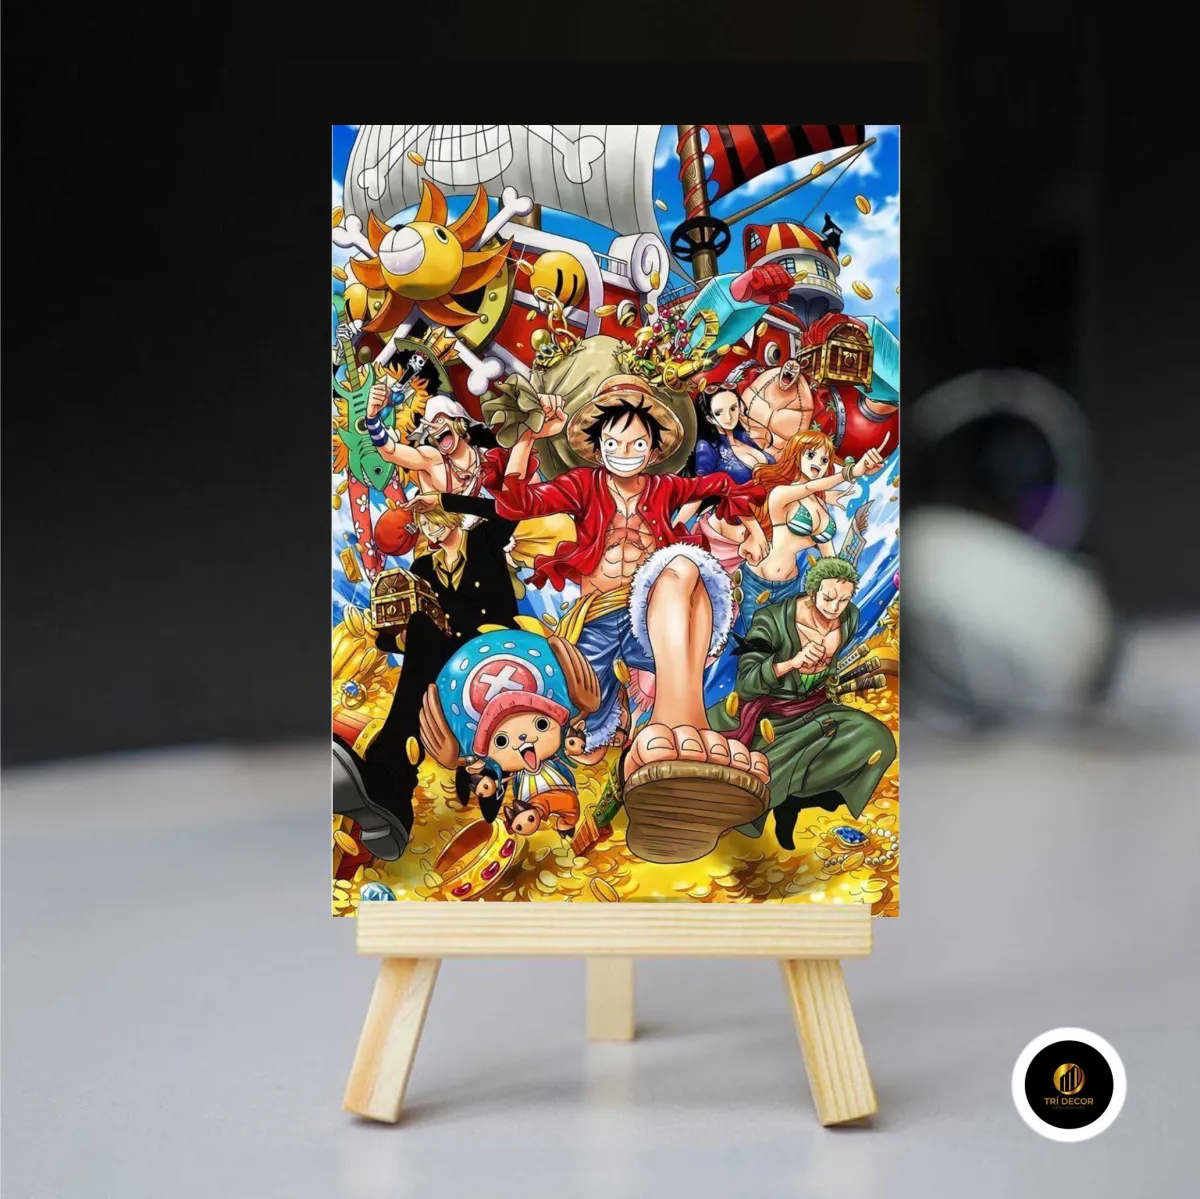 Đừng bỏ qua tranh kính One Piece Cute khi tham gia vào câu lạc bộ fan của bạn. Những bức tranh này được làm từ chất liệu cao cấp và độ sắc nét hoàn hảo, sẽ khiến bạn thích thú và tự hào khi sở hữu chúng.